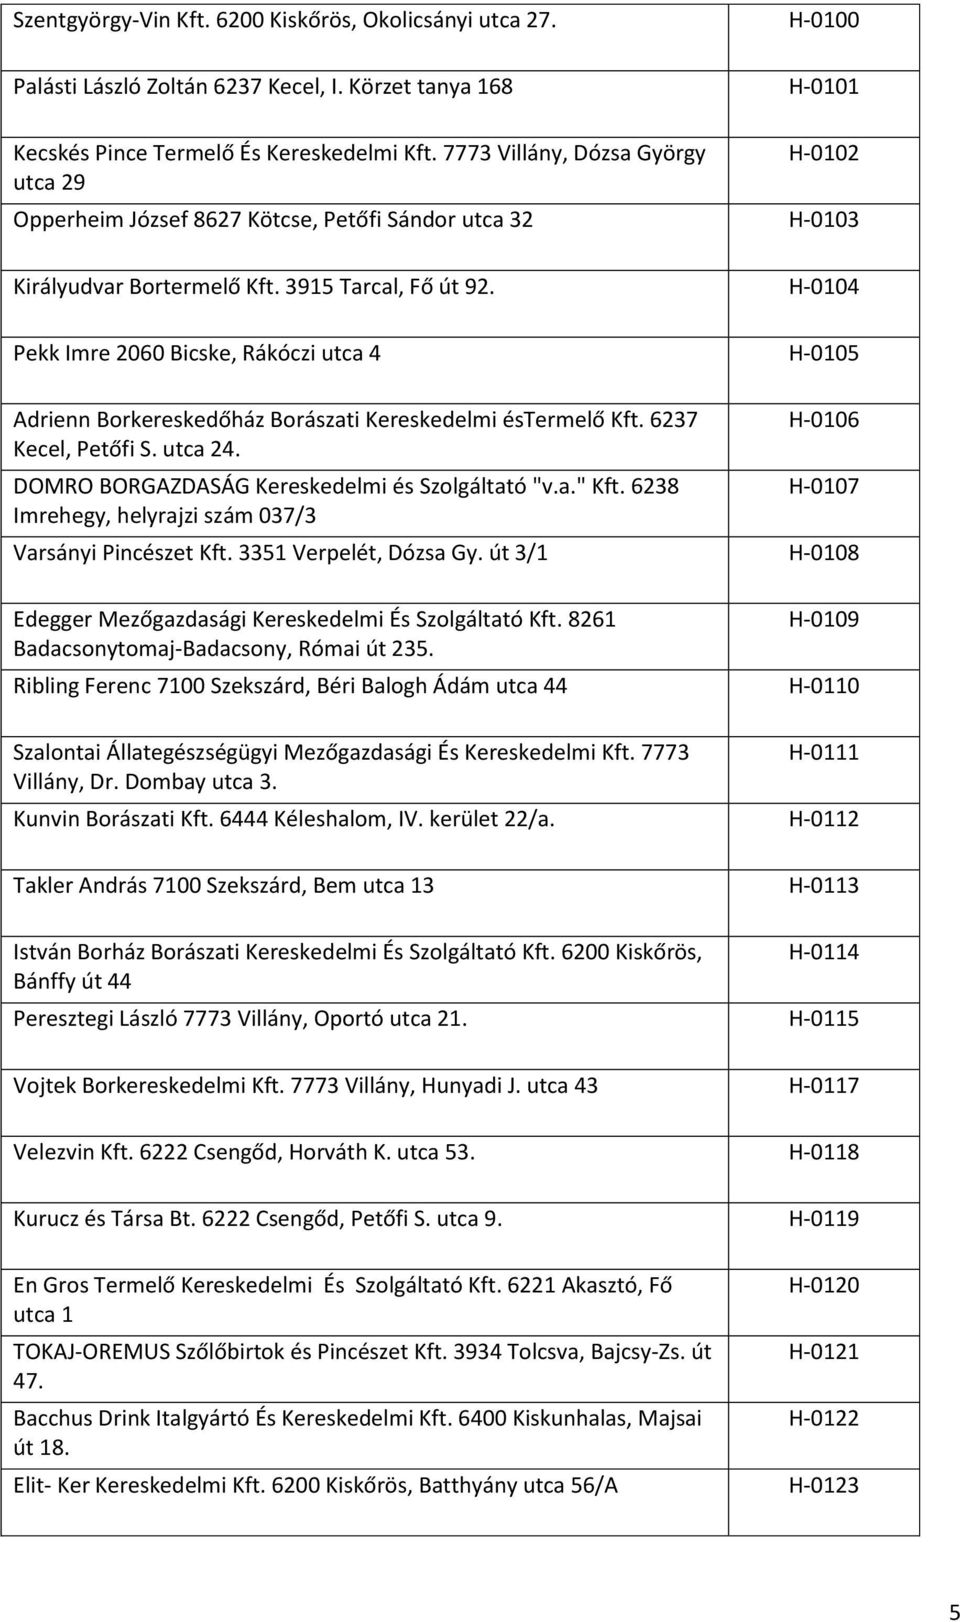 Palackozó üzemek nyilvántartása január 1-től - PDF Ingyenes letöltés